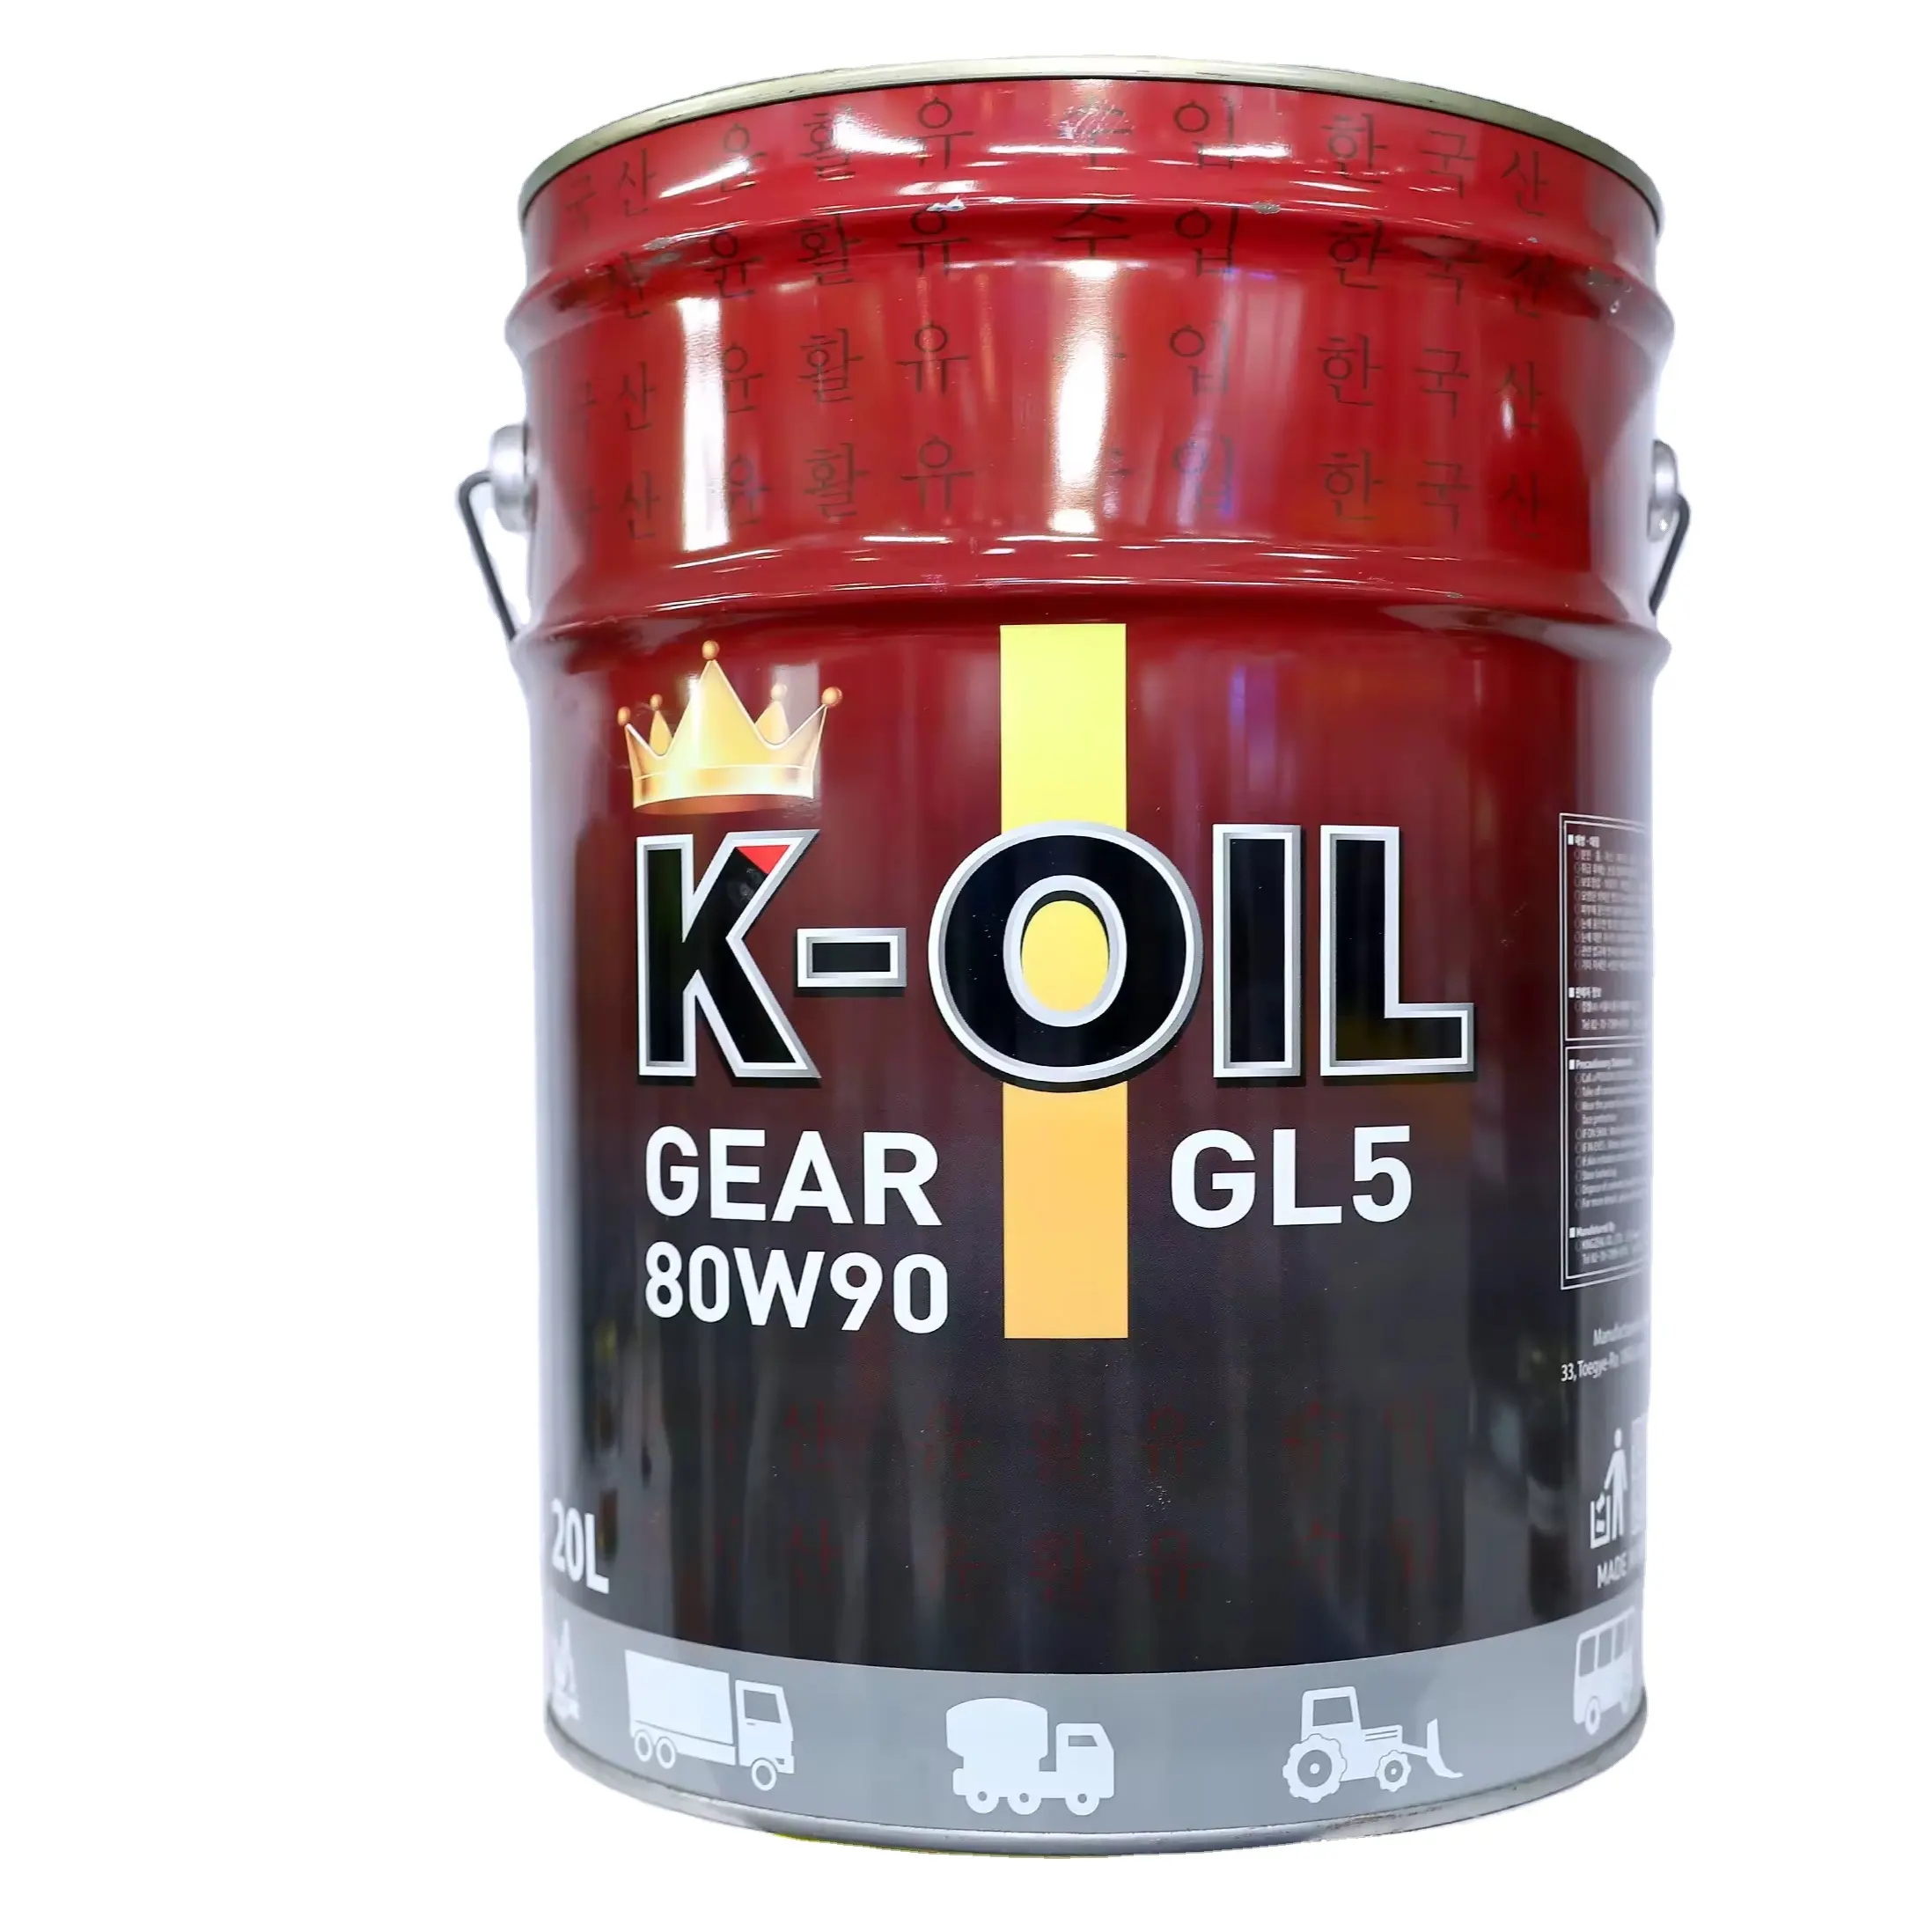 K-Oil Gear منتج ممتاز بنظام نقل حركة يدوي منتج جيد مضاد للسرعات للبيع بالجملة ومخصص لمركبات الطرق الوعرة المصنعة في فيتنام